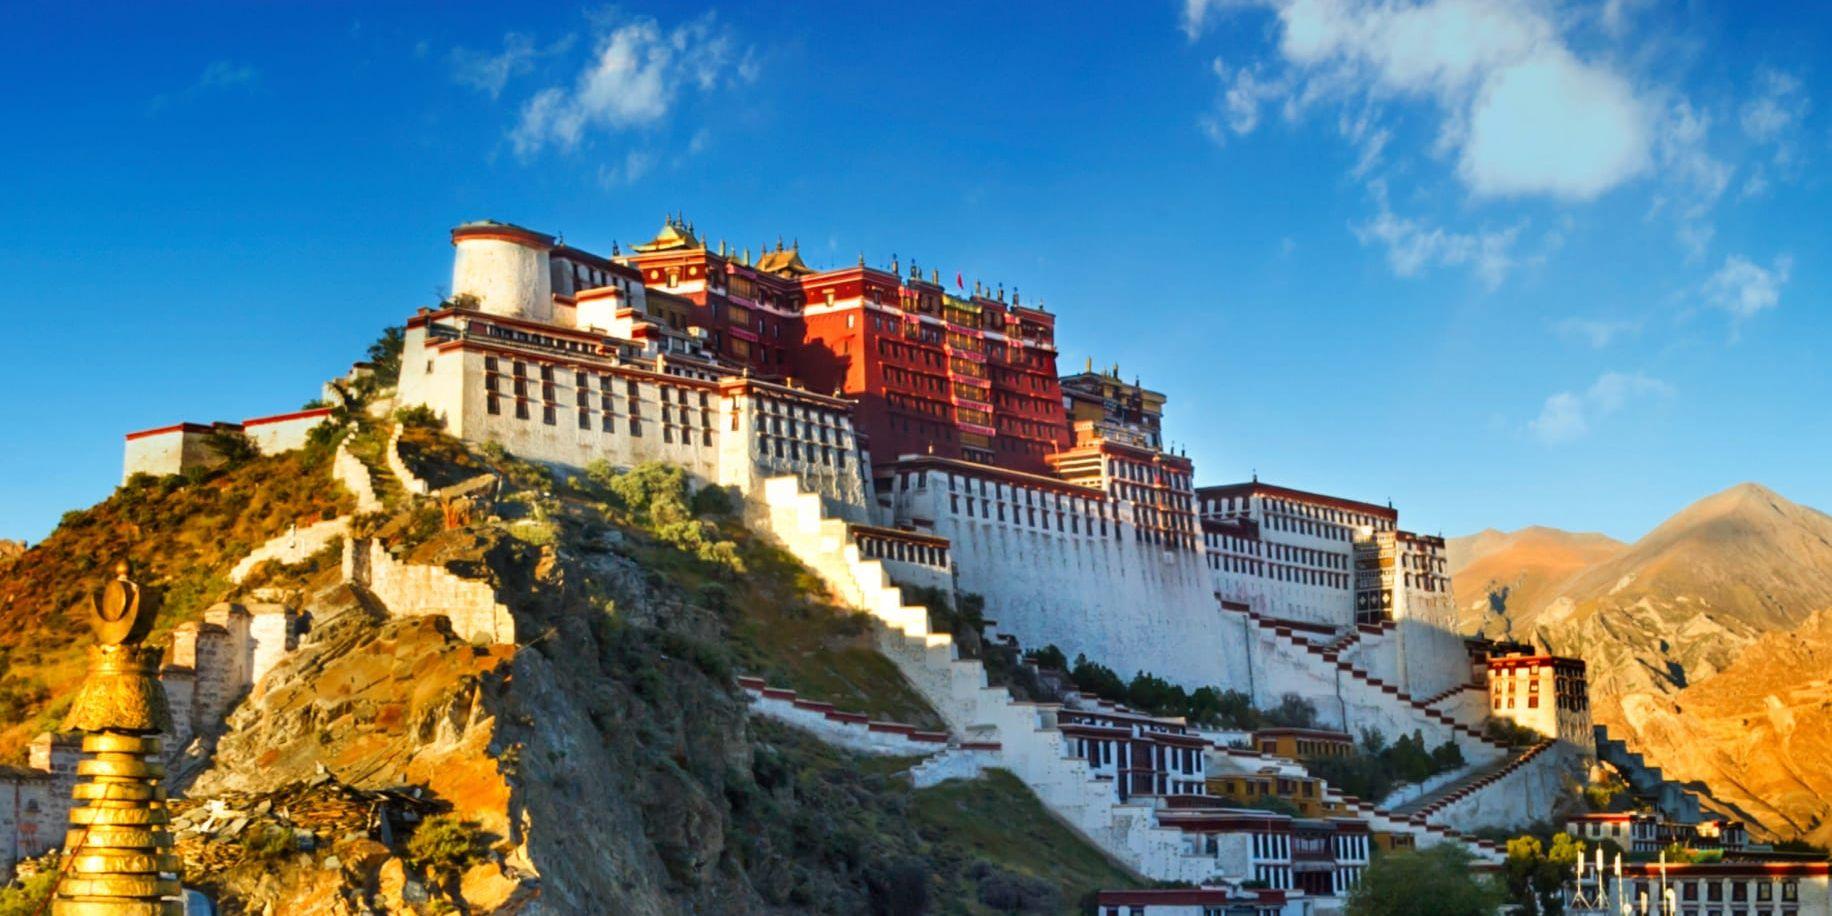 På en klippa i Lhasa i Tibet ligger mäktiga och mytomspunna Potalapalatset med sina 13 våningar.